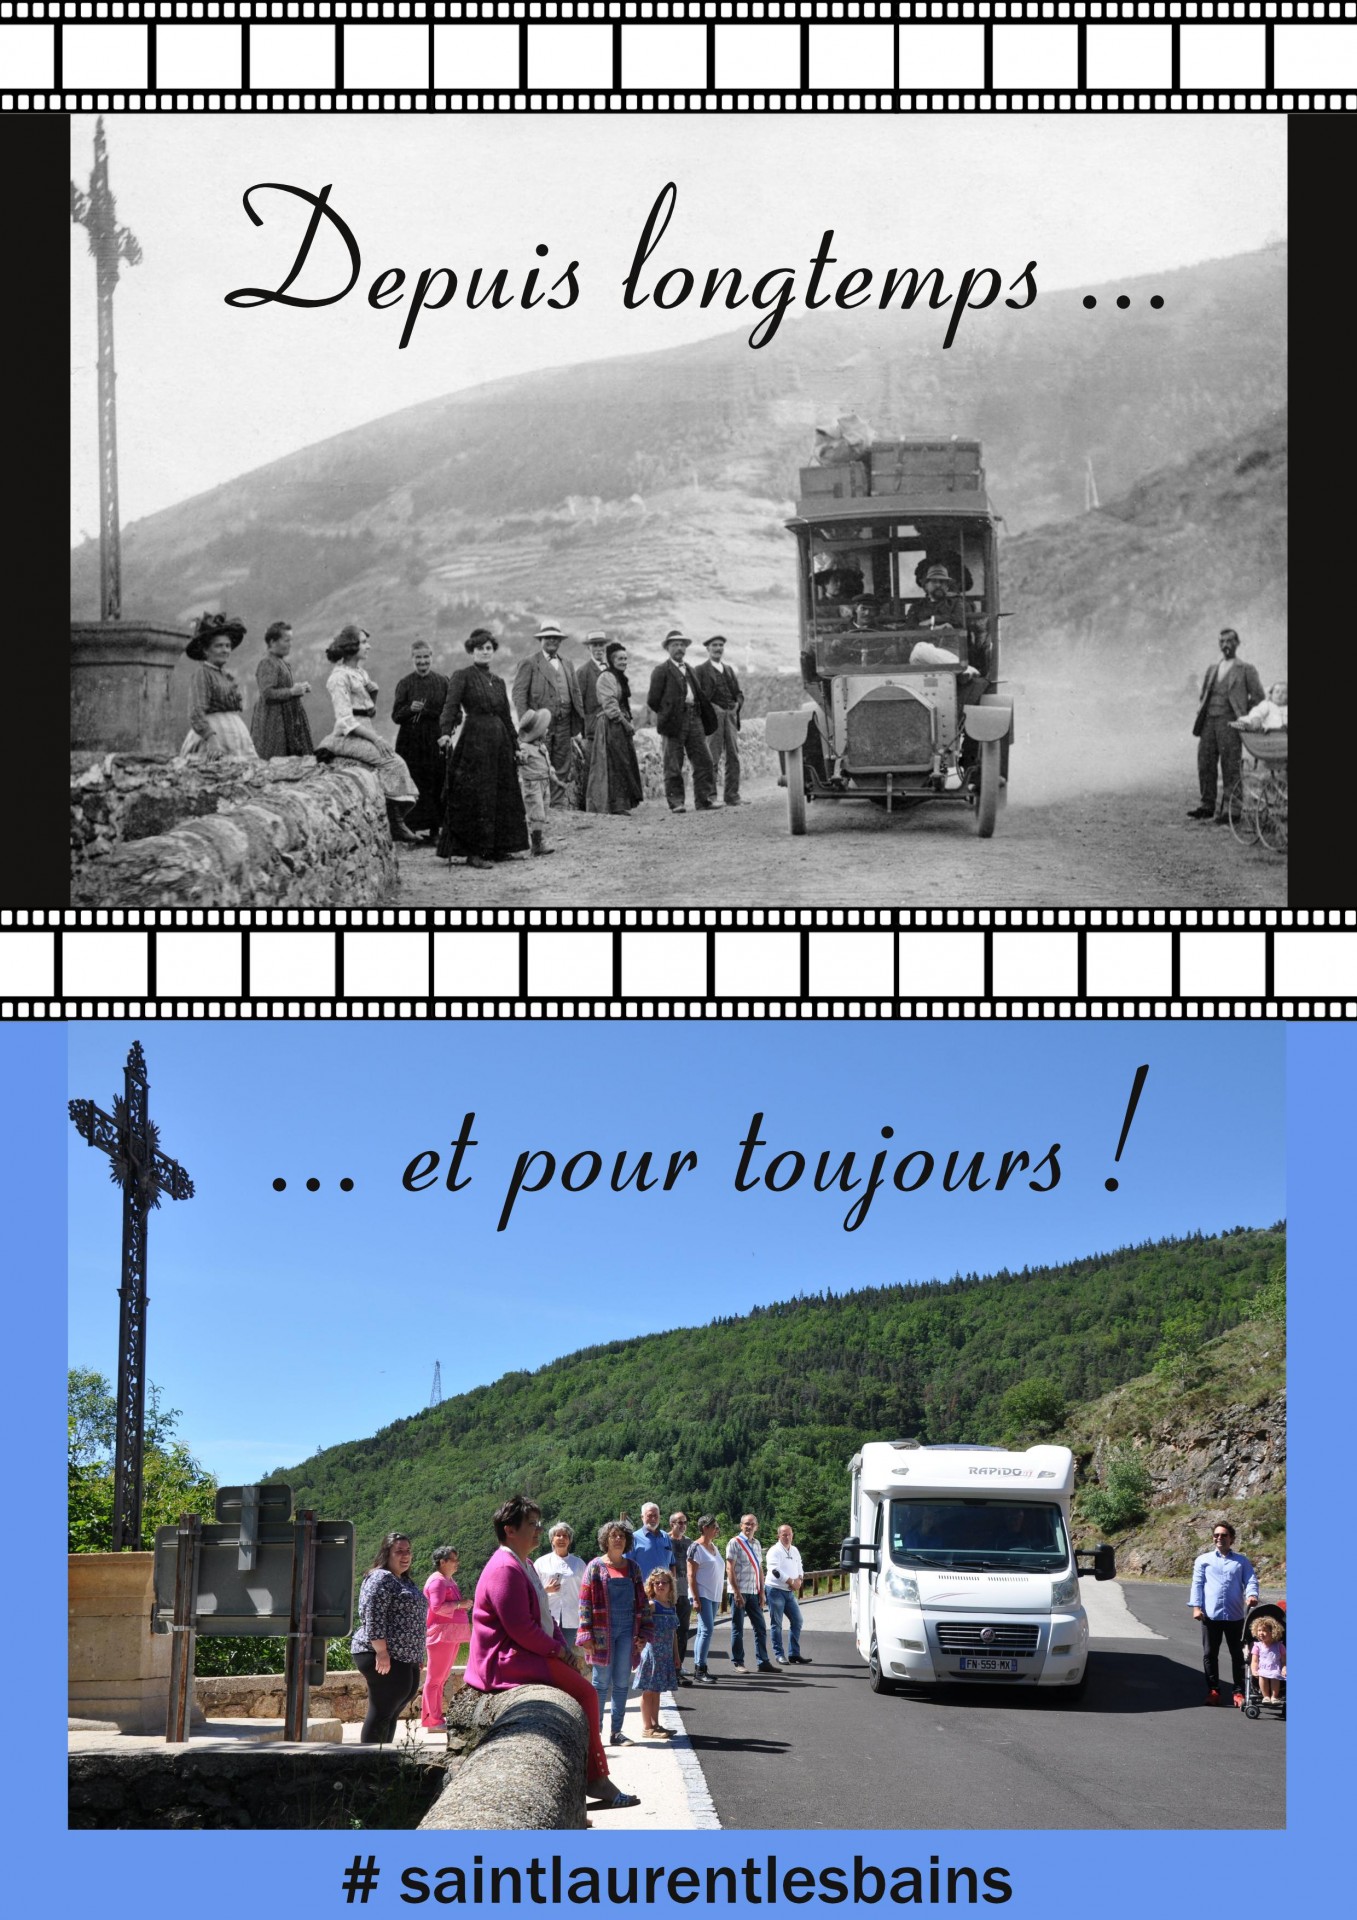 Saint-Laurent-les-Bains en route vers le monde d’après !